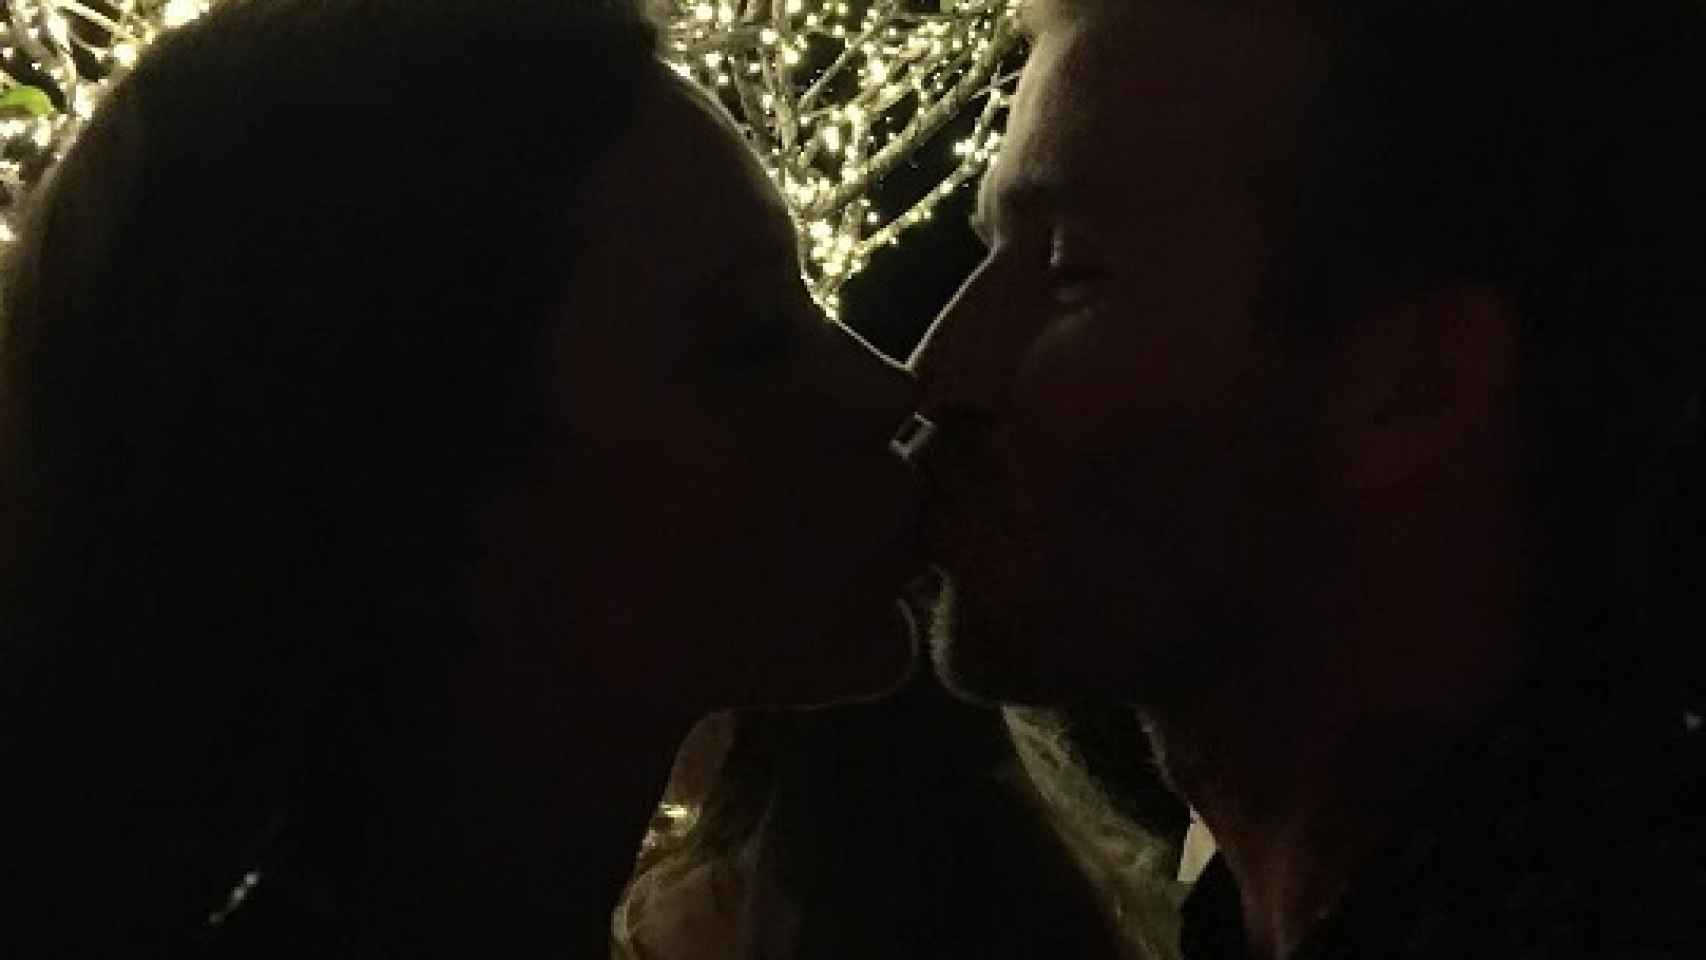 David y Victoria Beckham se besan para felicitarse el nuevo año